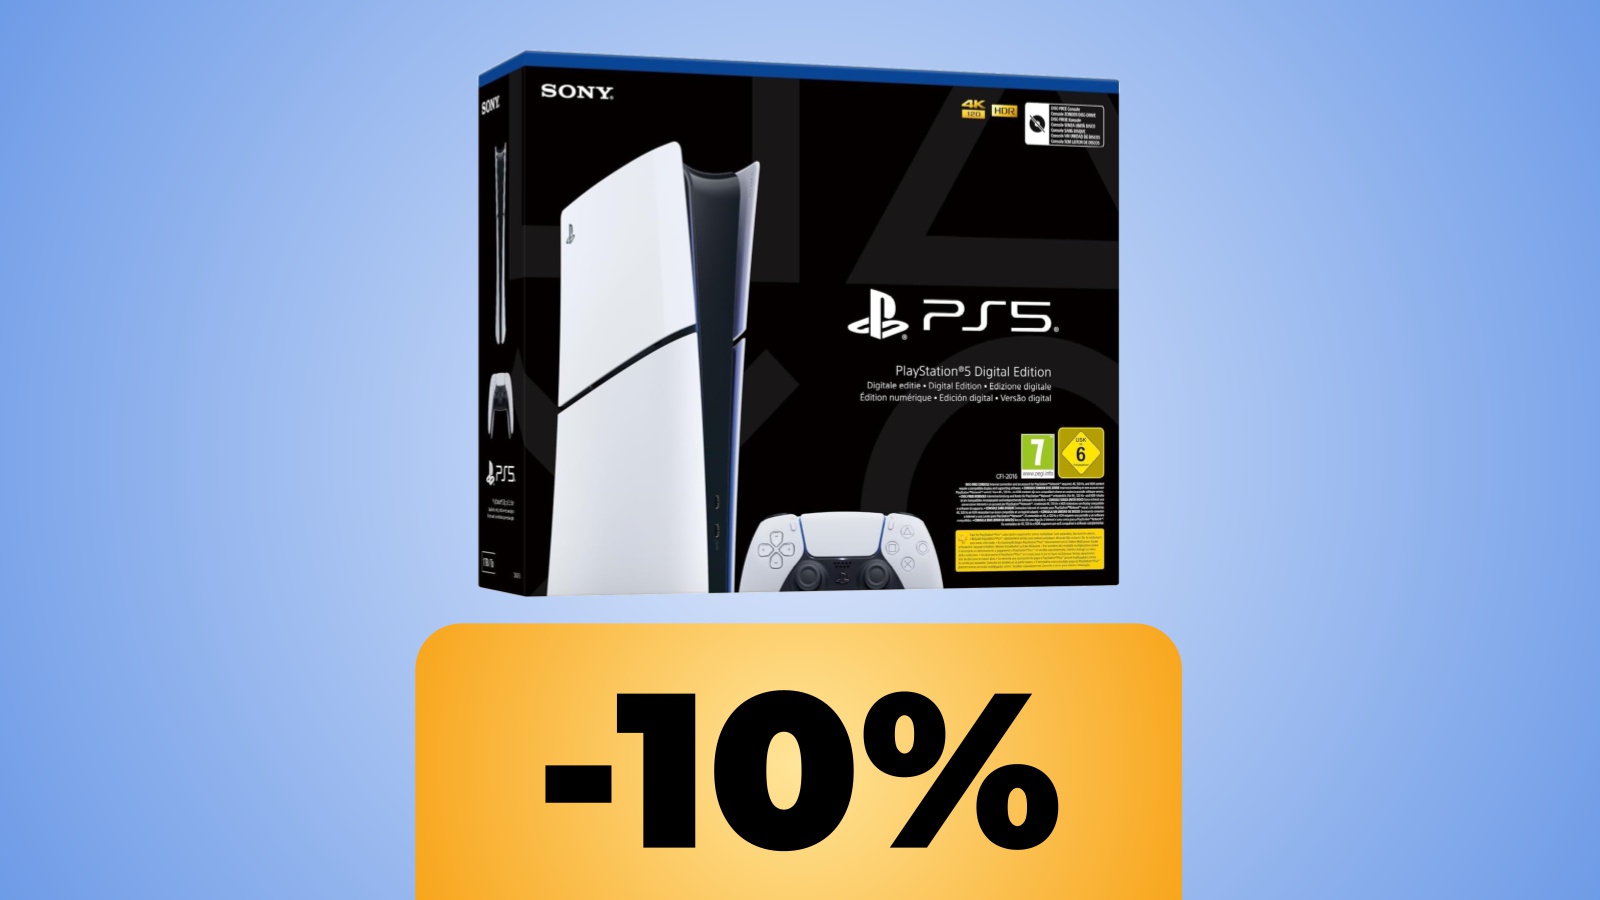 PS5 Slim versione digital è in sconto su Amazon Italia: vediamo il prezzo